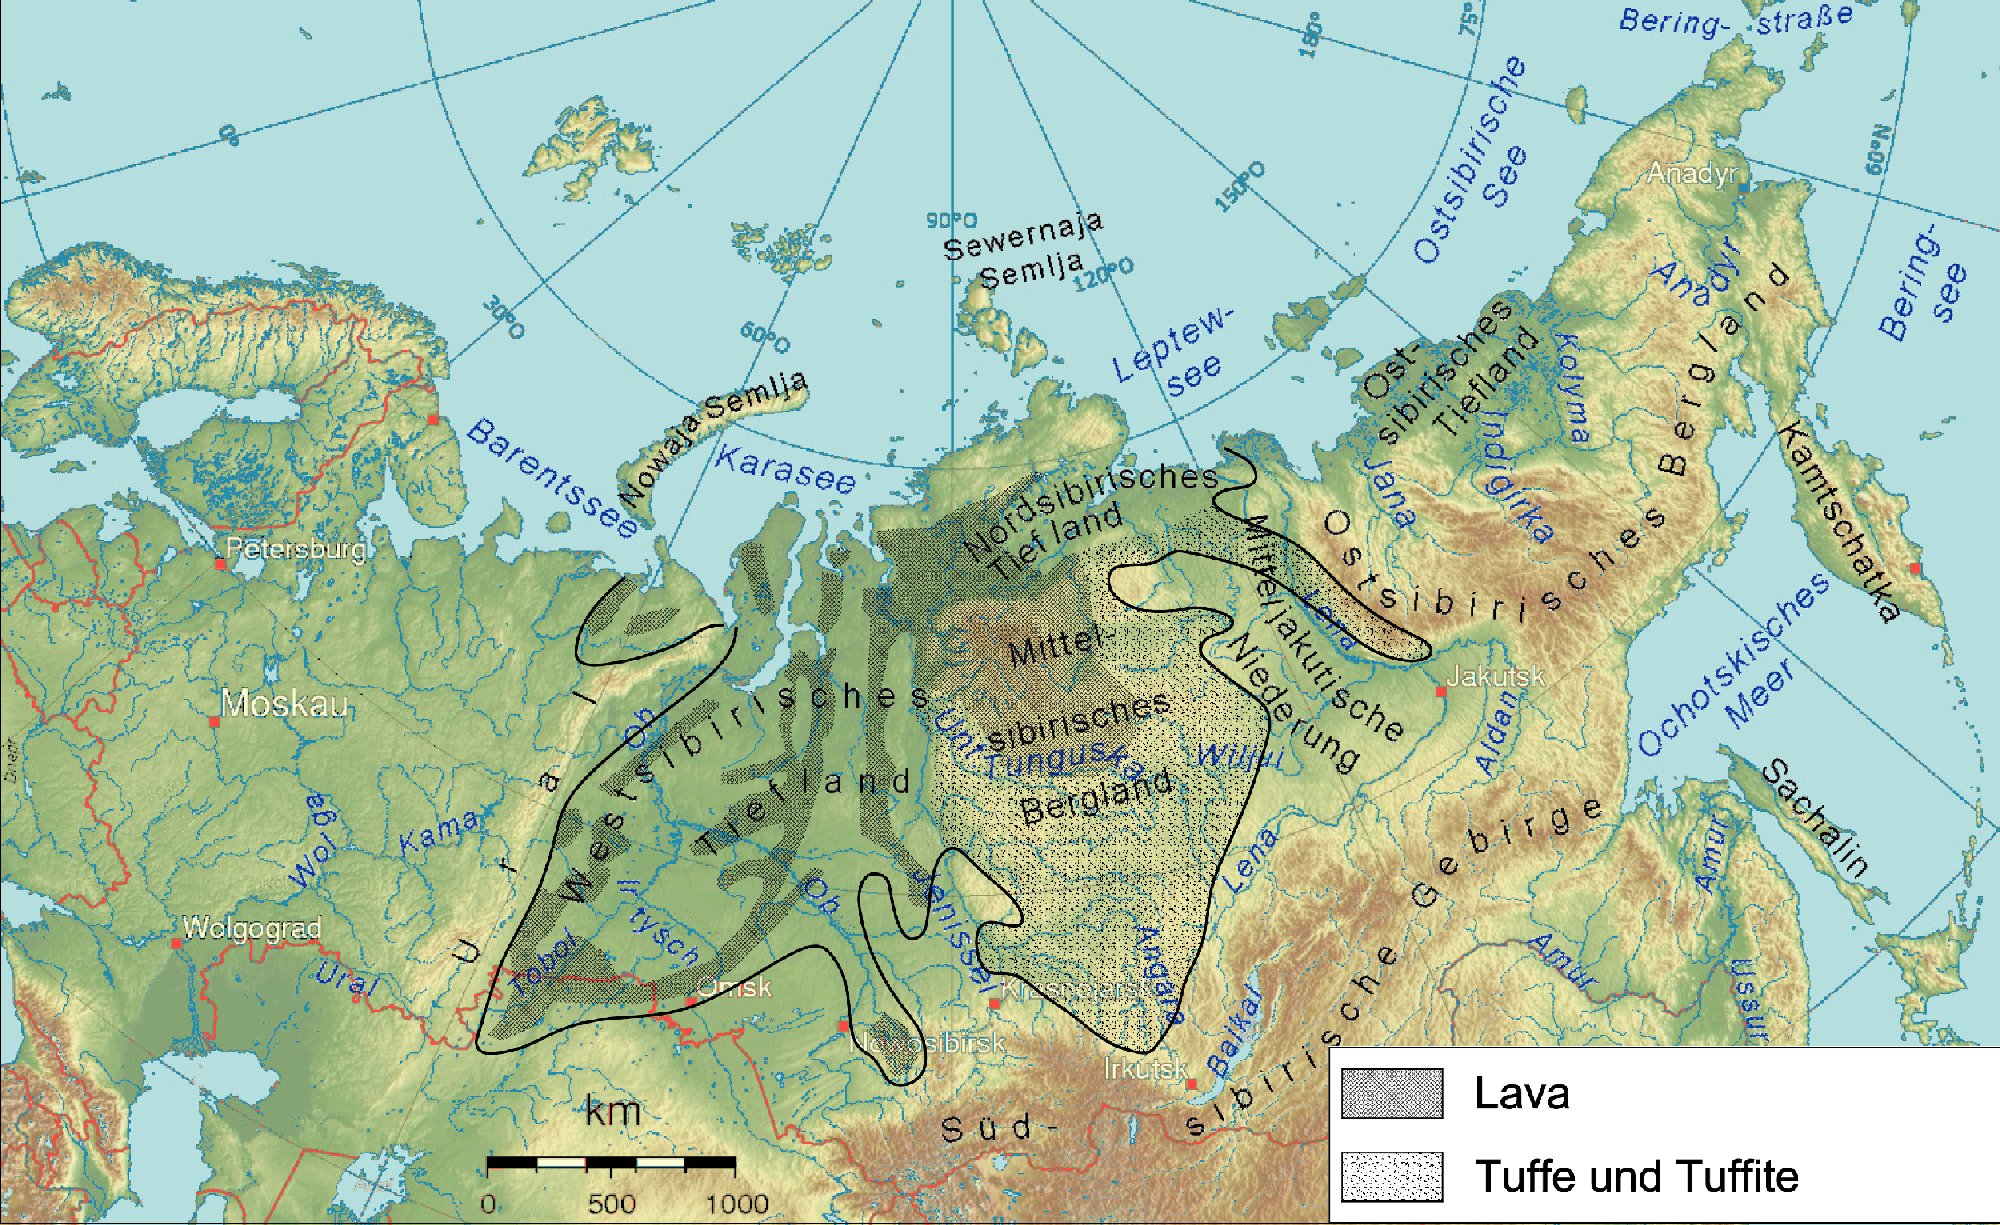 Extensión de las escaleras siberianas en un mapa actual.